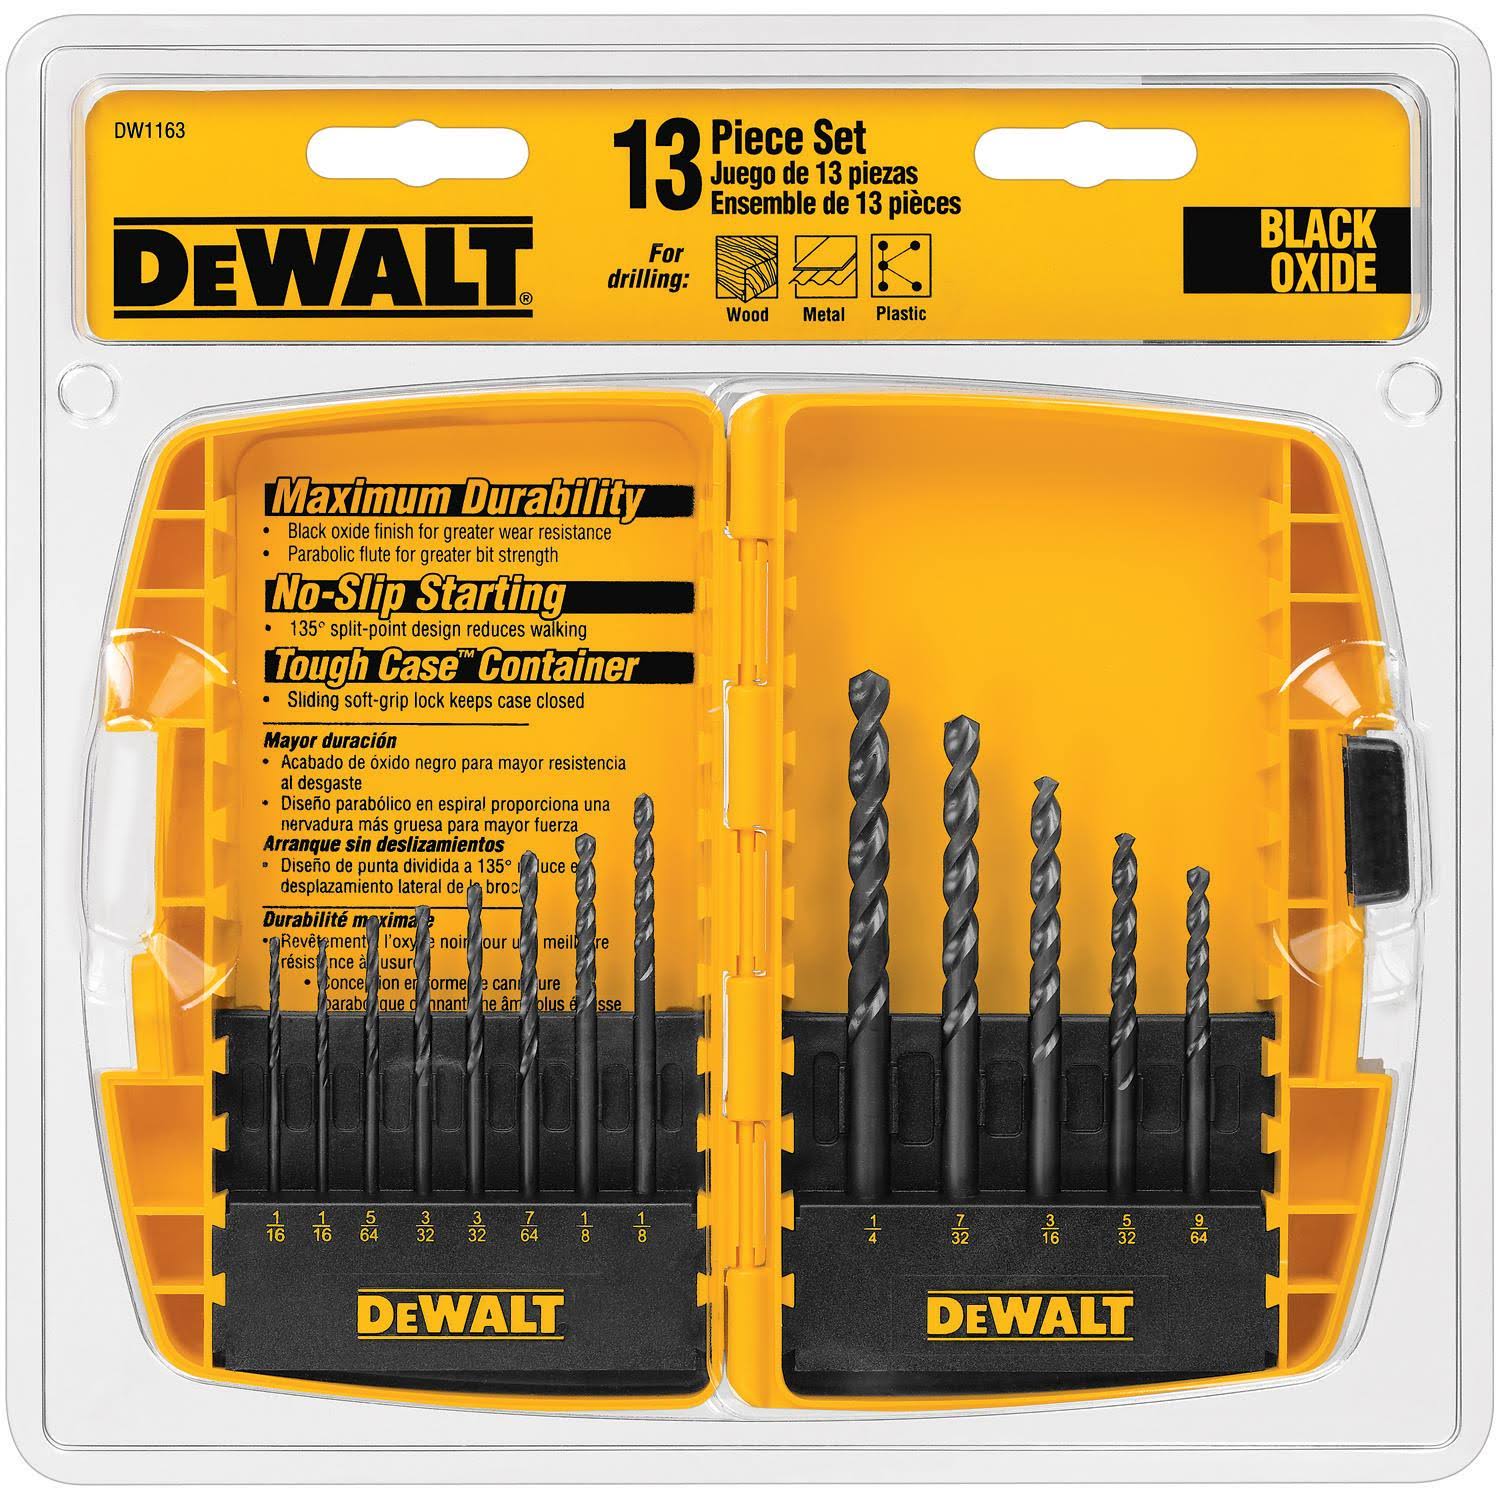 Dewalt DW1163 Black Oxide Metal Twist Drill Bit Set - 13 Piece